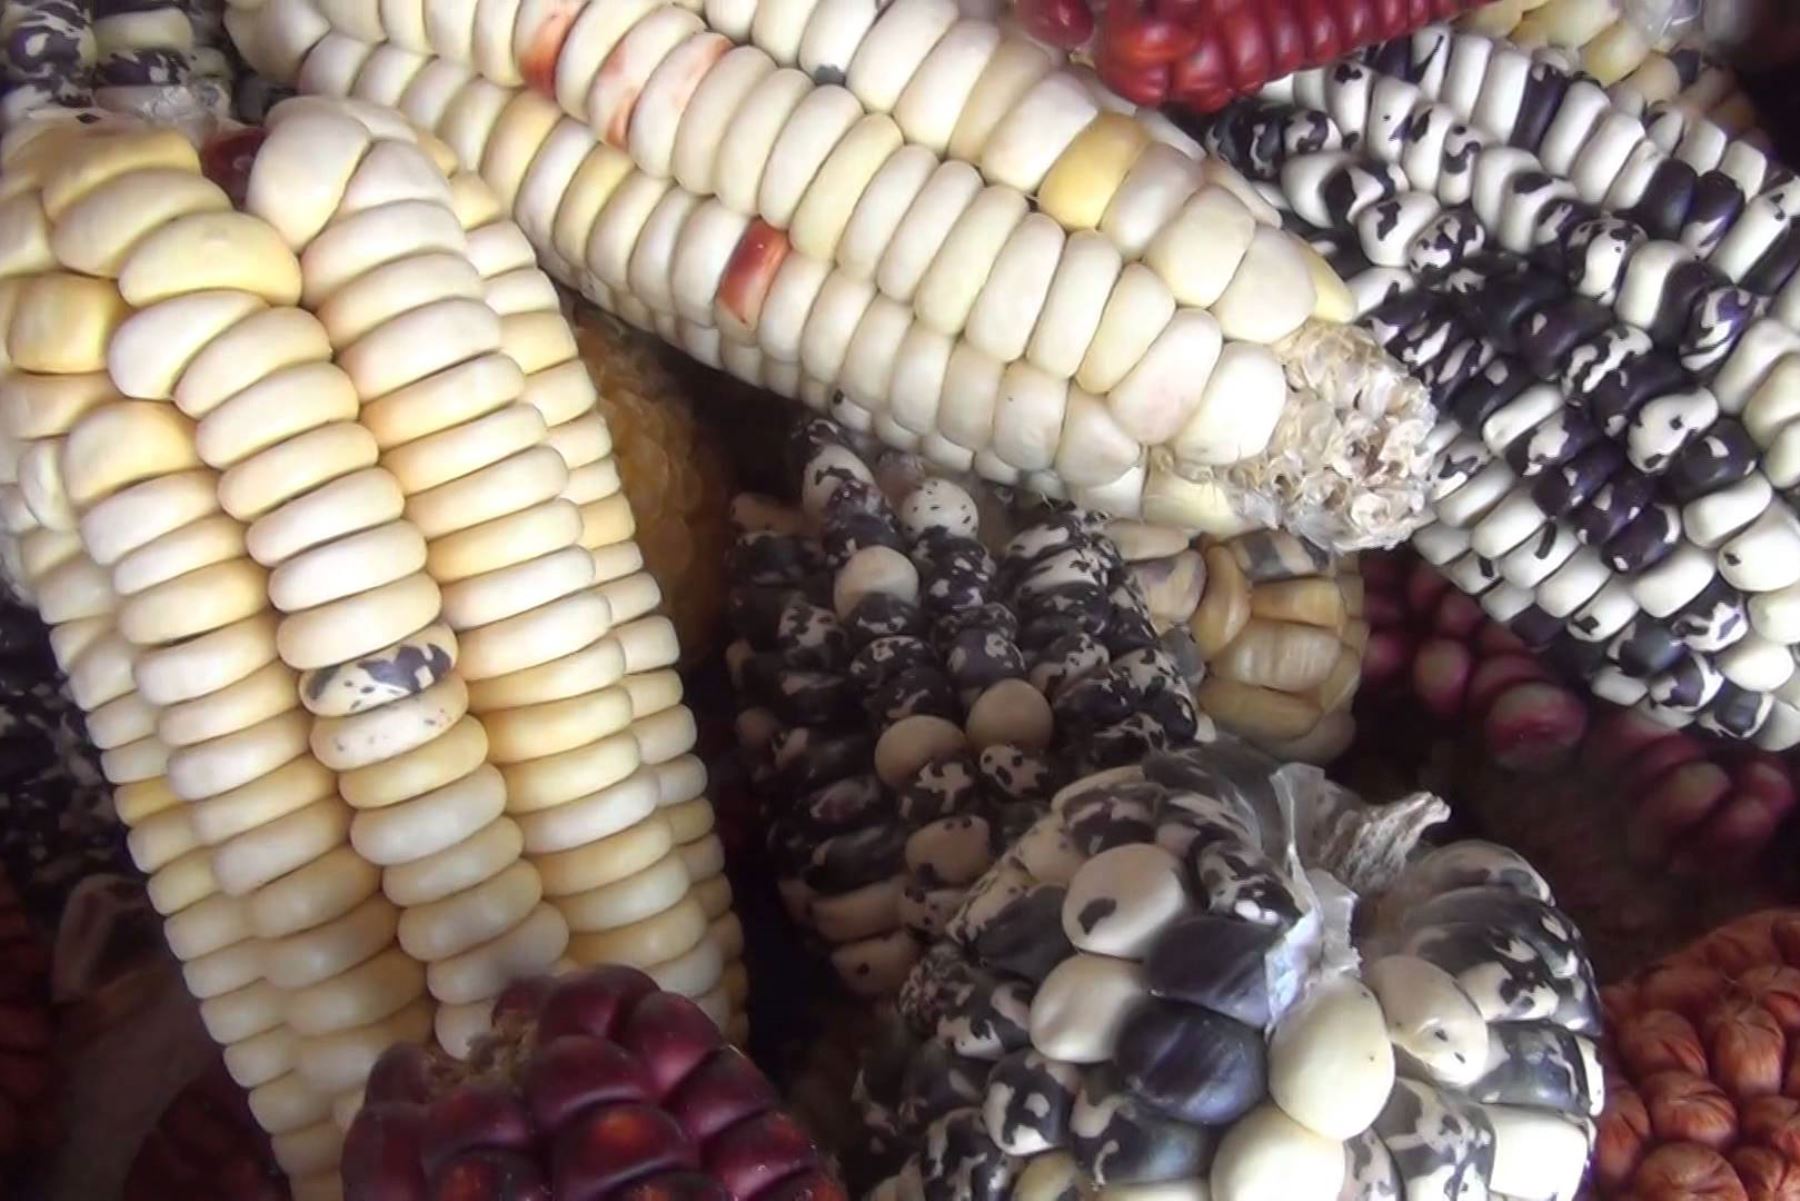 El maíz blanco gigante el Cusco es un alimento altamente energético y rico en nutrientes digestibles. Es rico en calcio, fósforo, magnesio y potasio. También posee vitaminas del complejo B, así como ácido ascórbico. ANDINA/Difusión